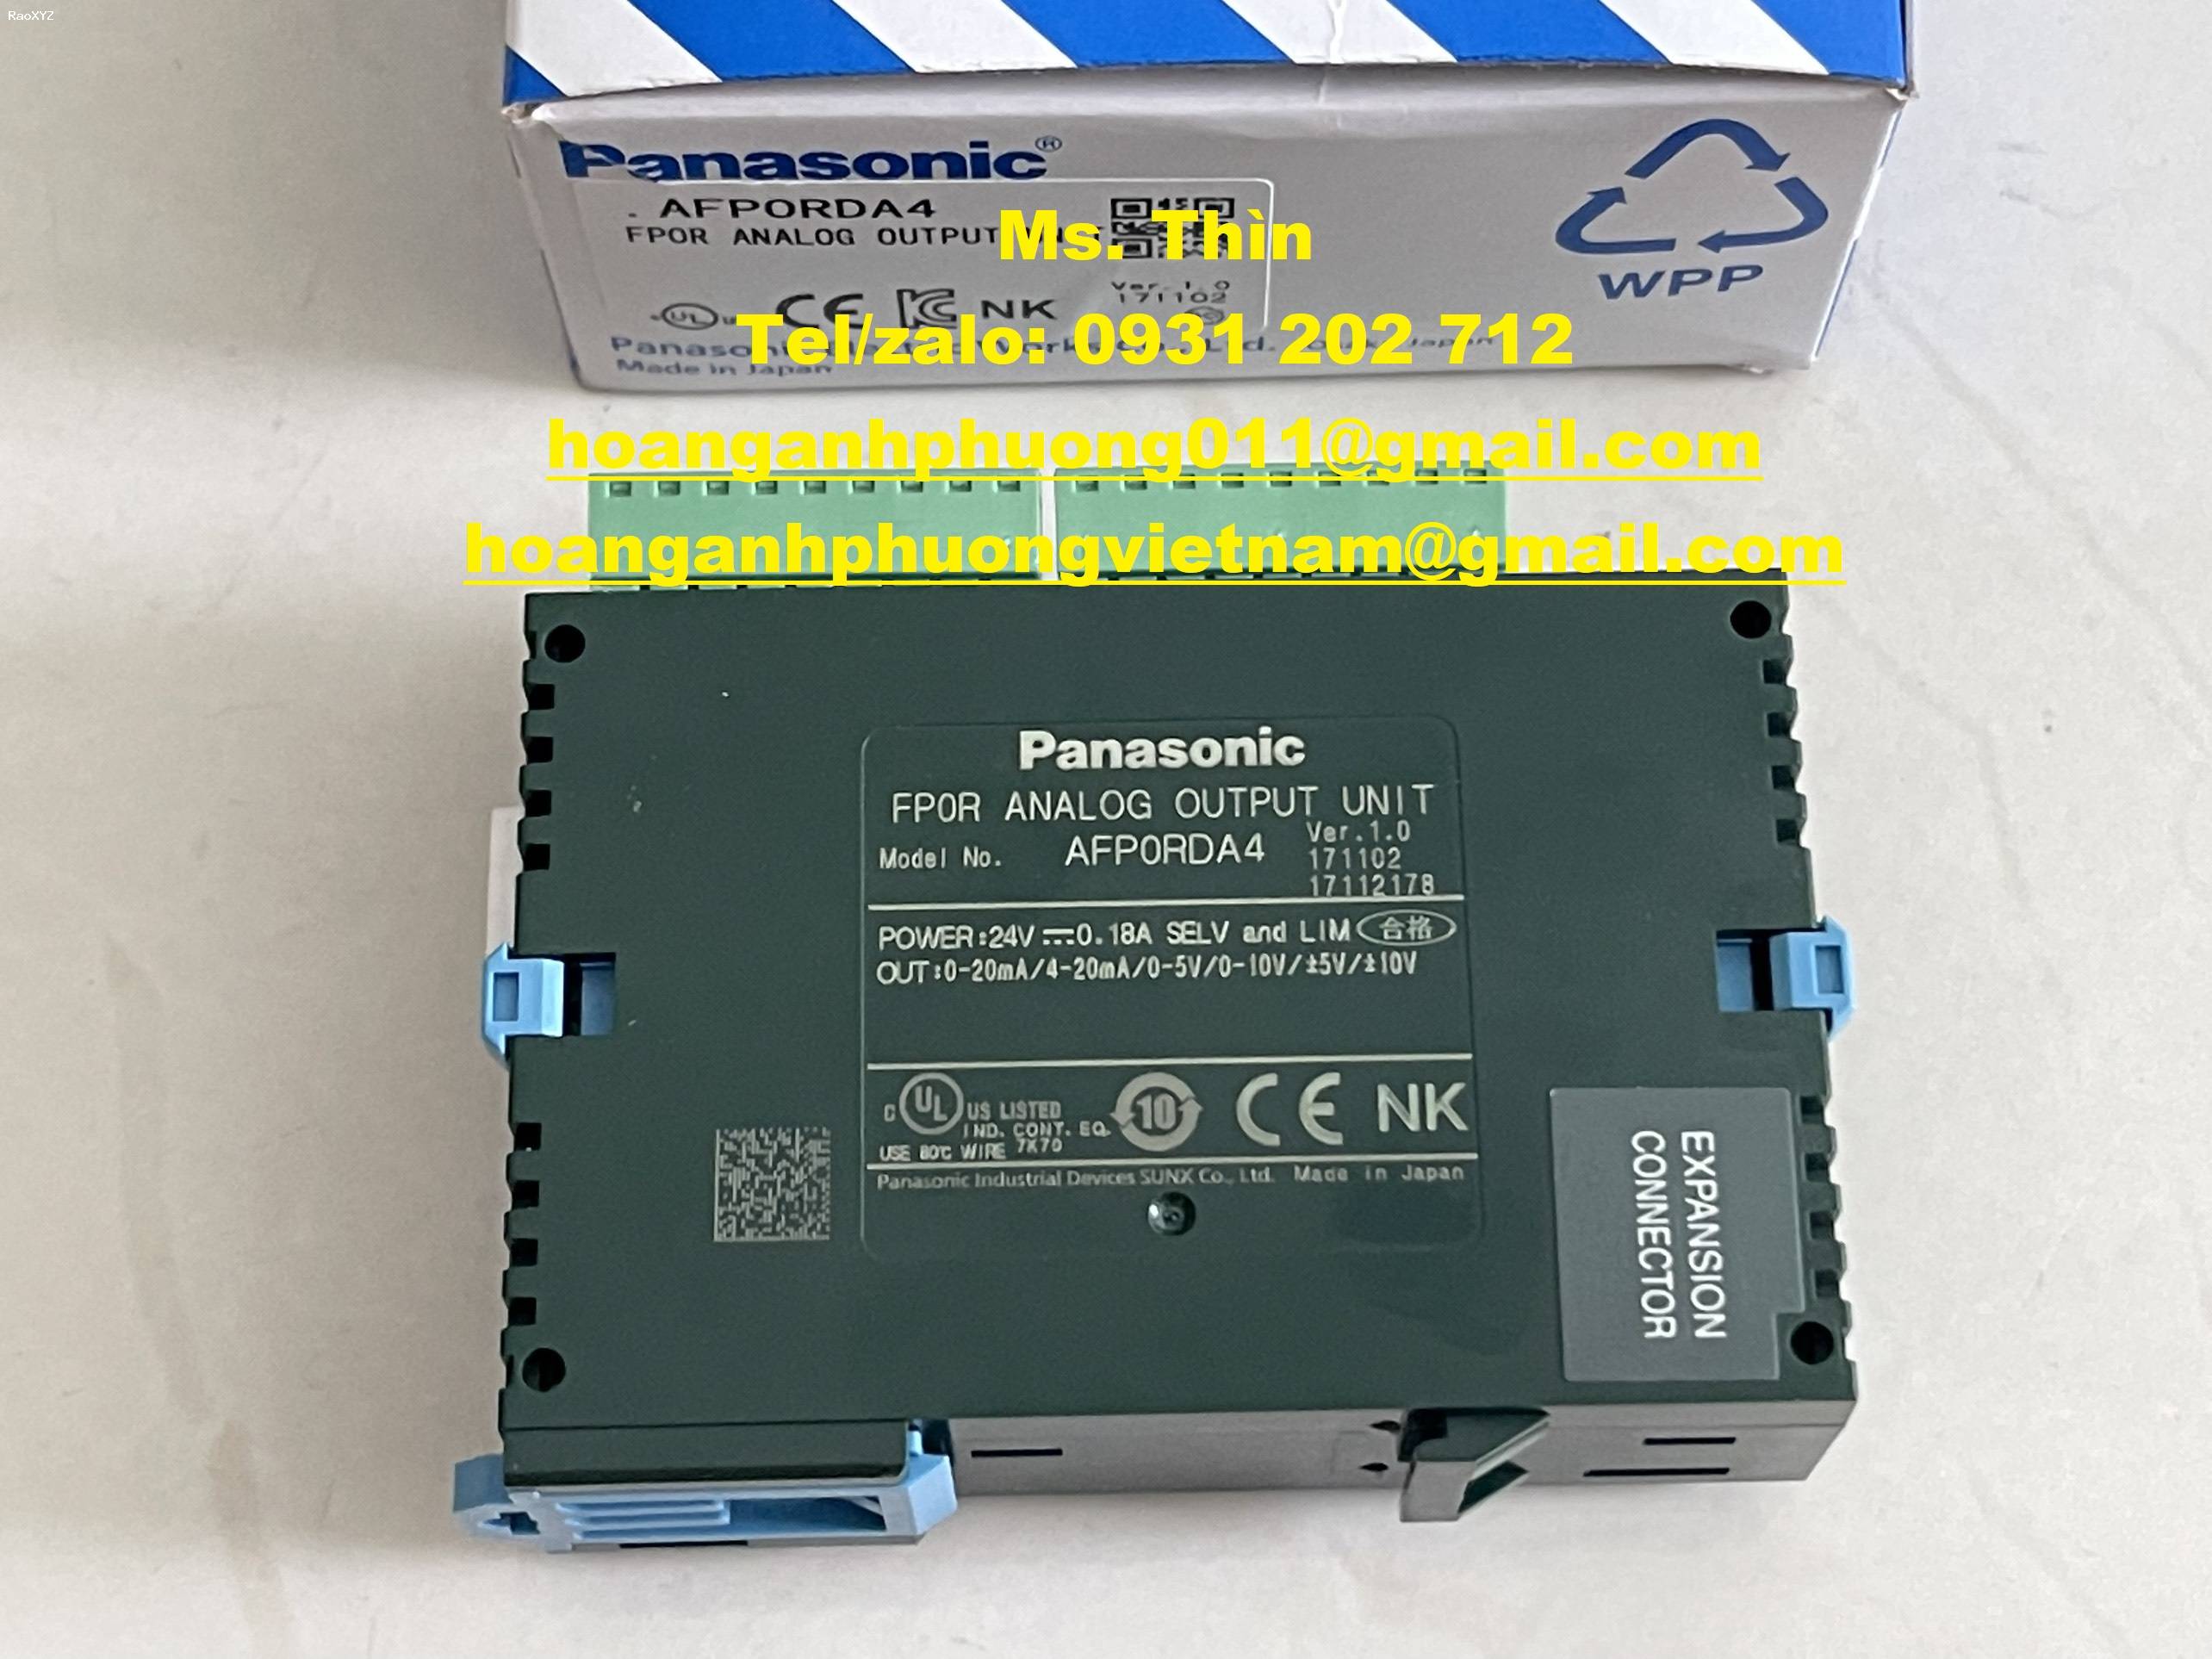 Module Panasonic AFP0RDA4, hàng nhập khẩu chính hãng, giá tốt tại Dĩ An